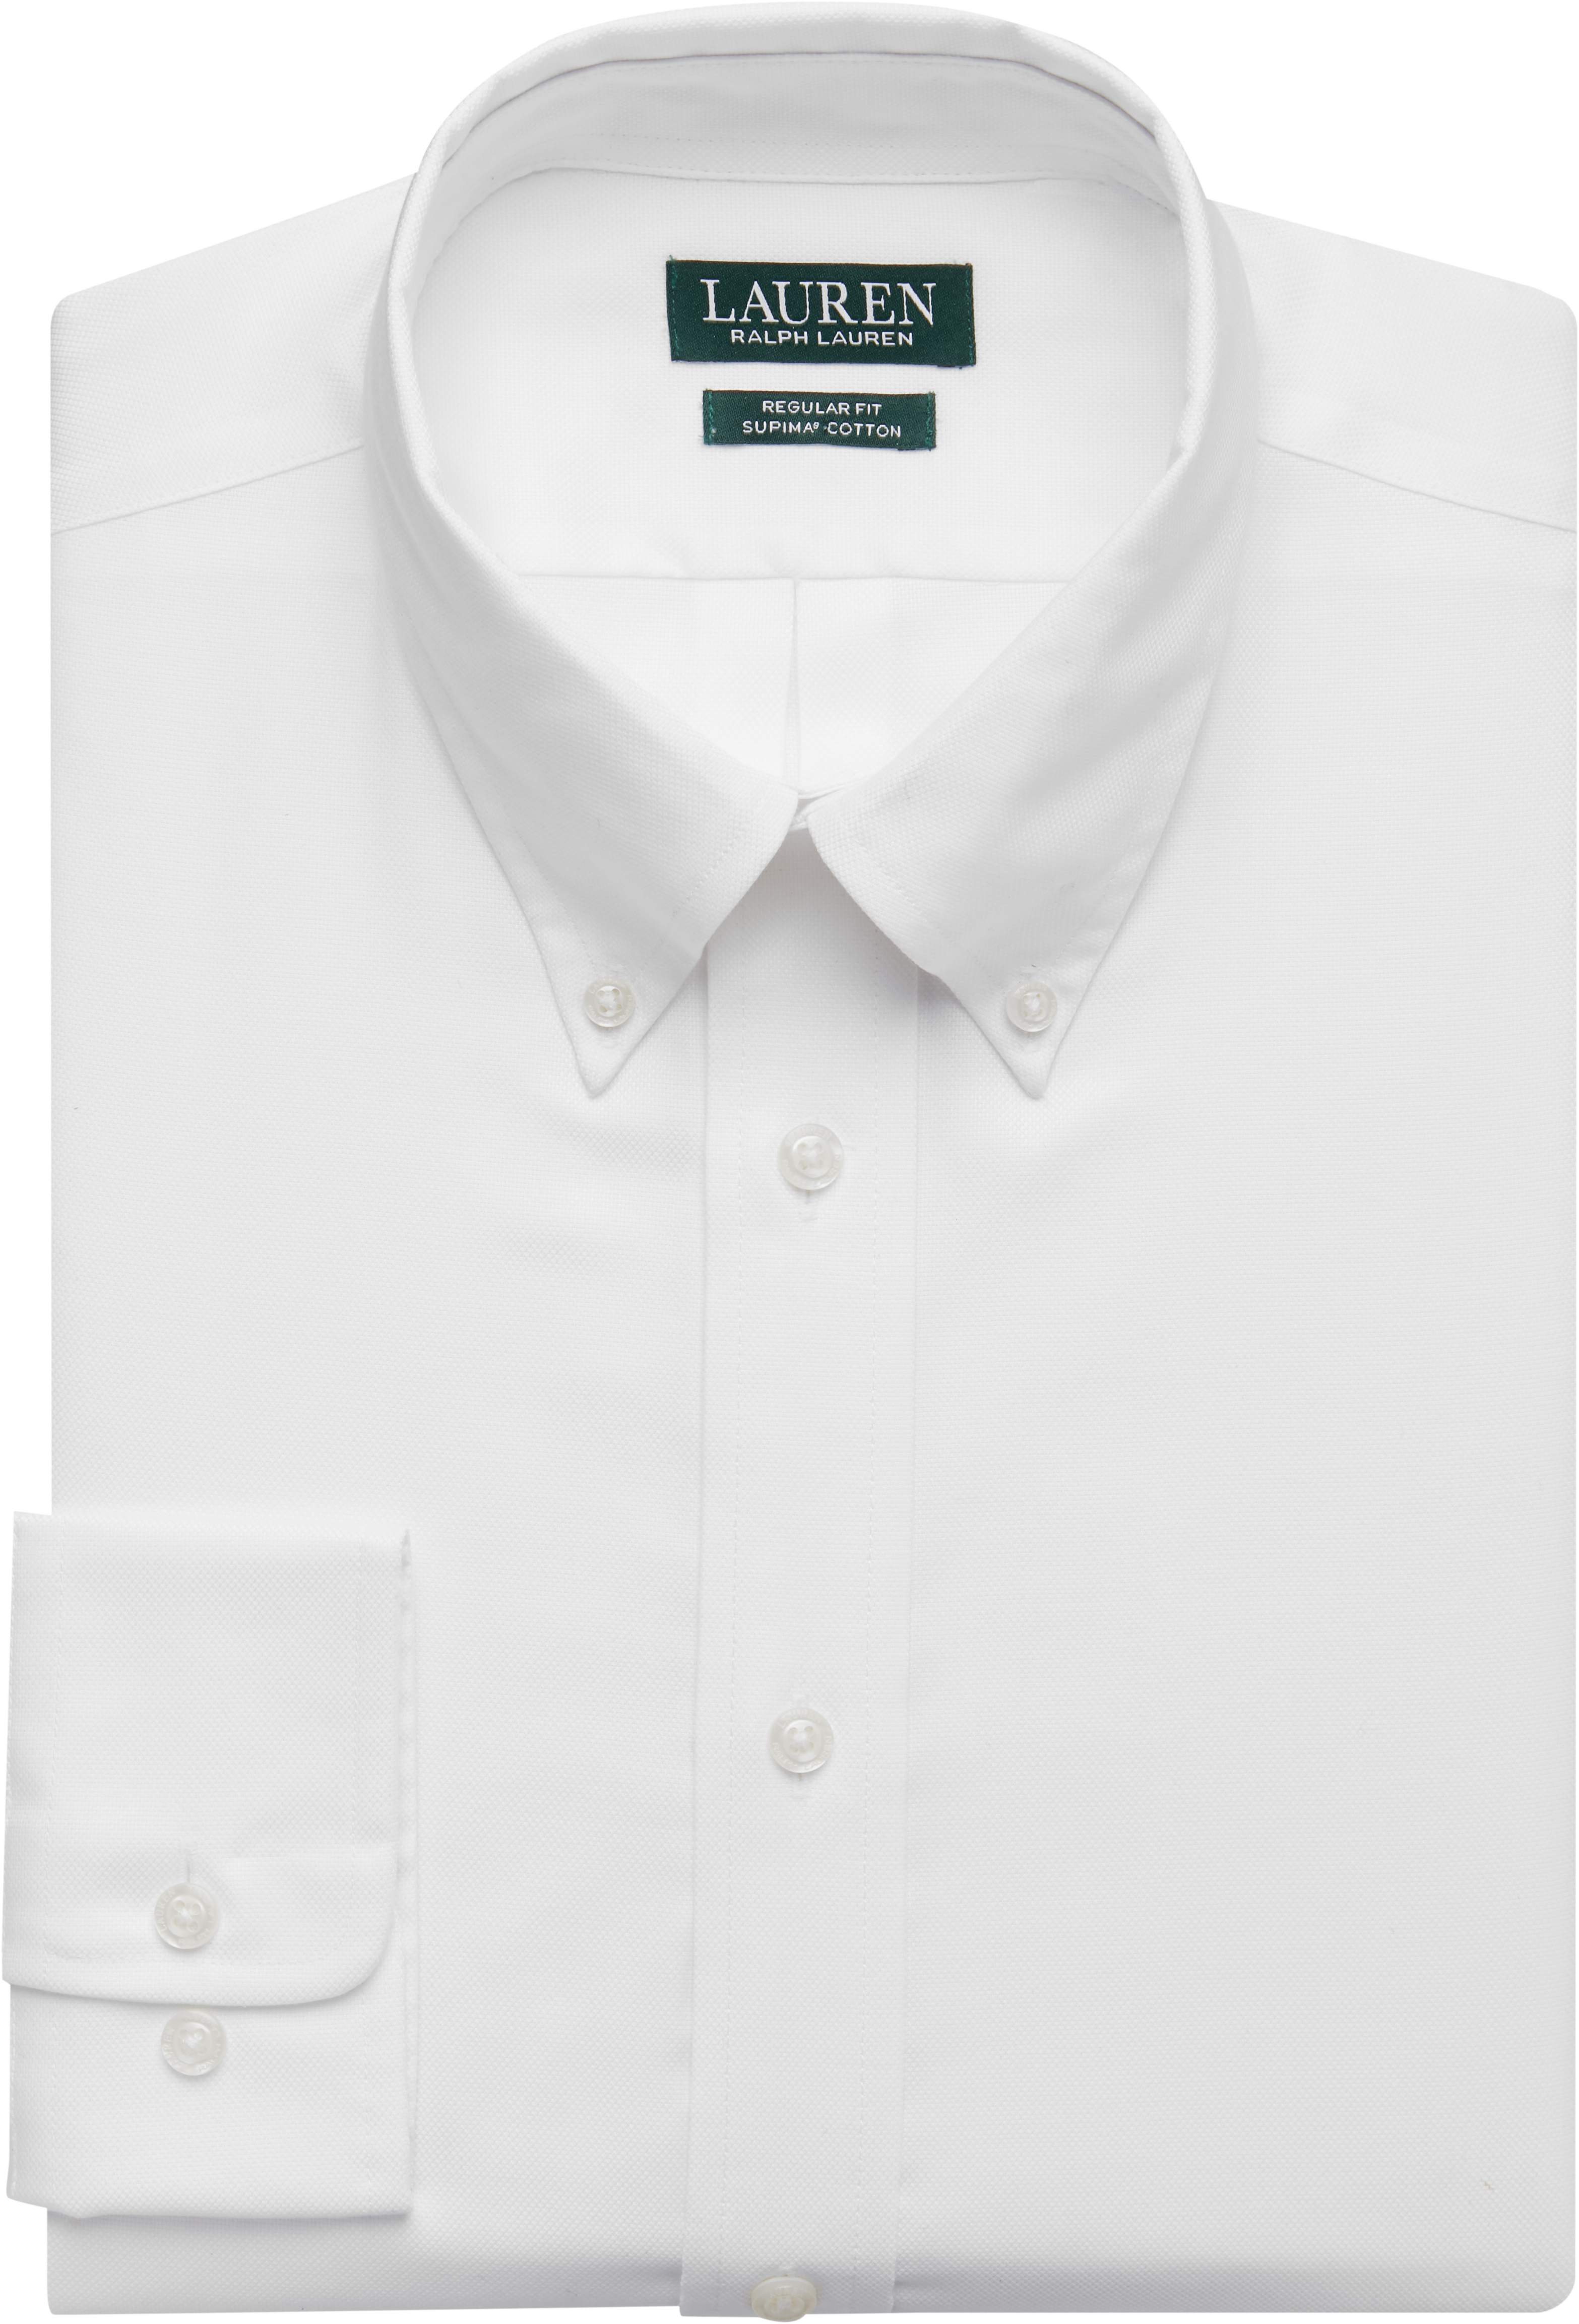 ralph lauren white shirts